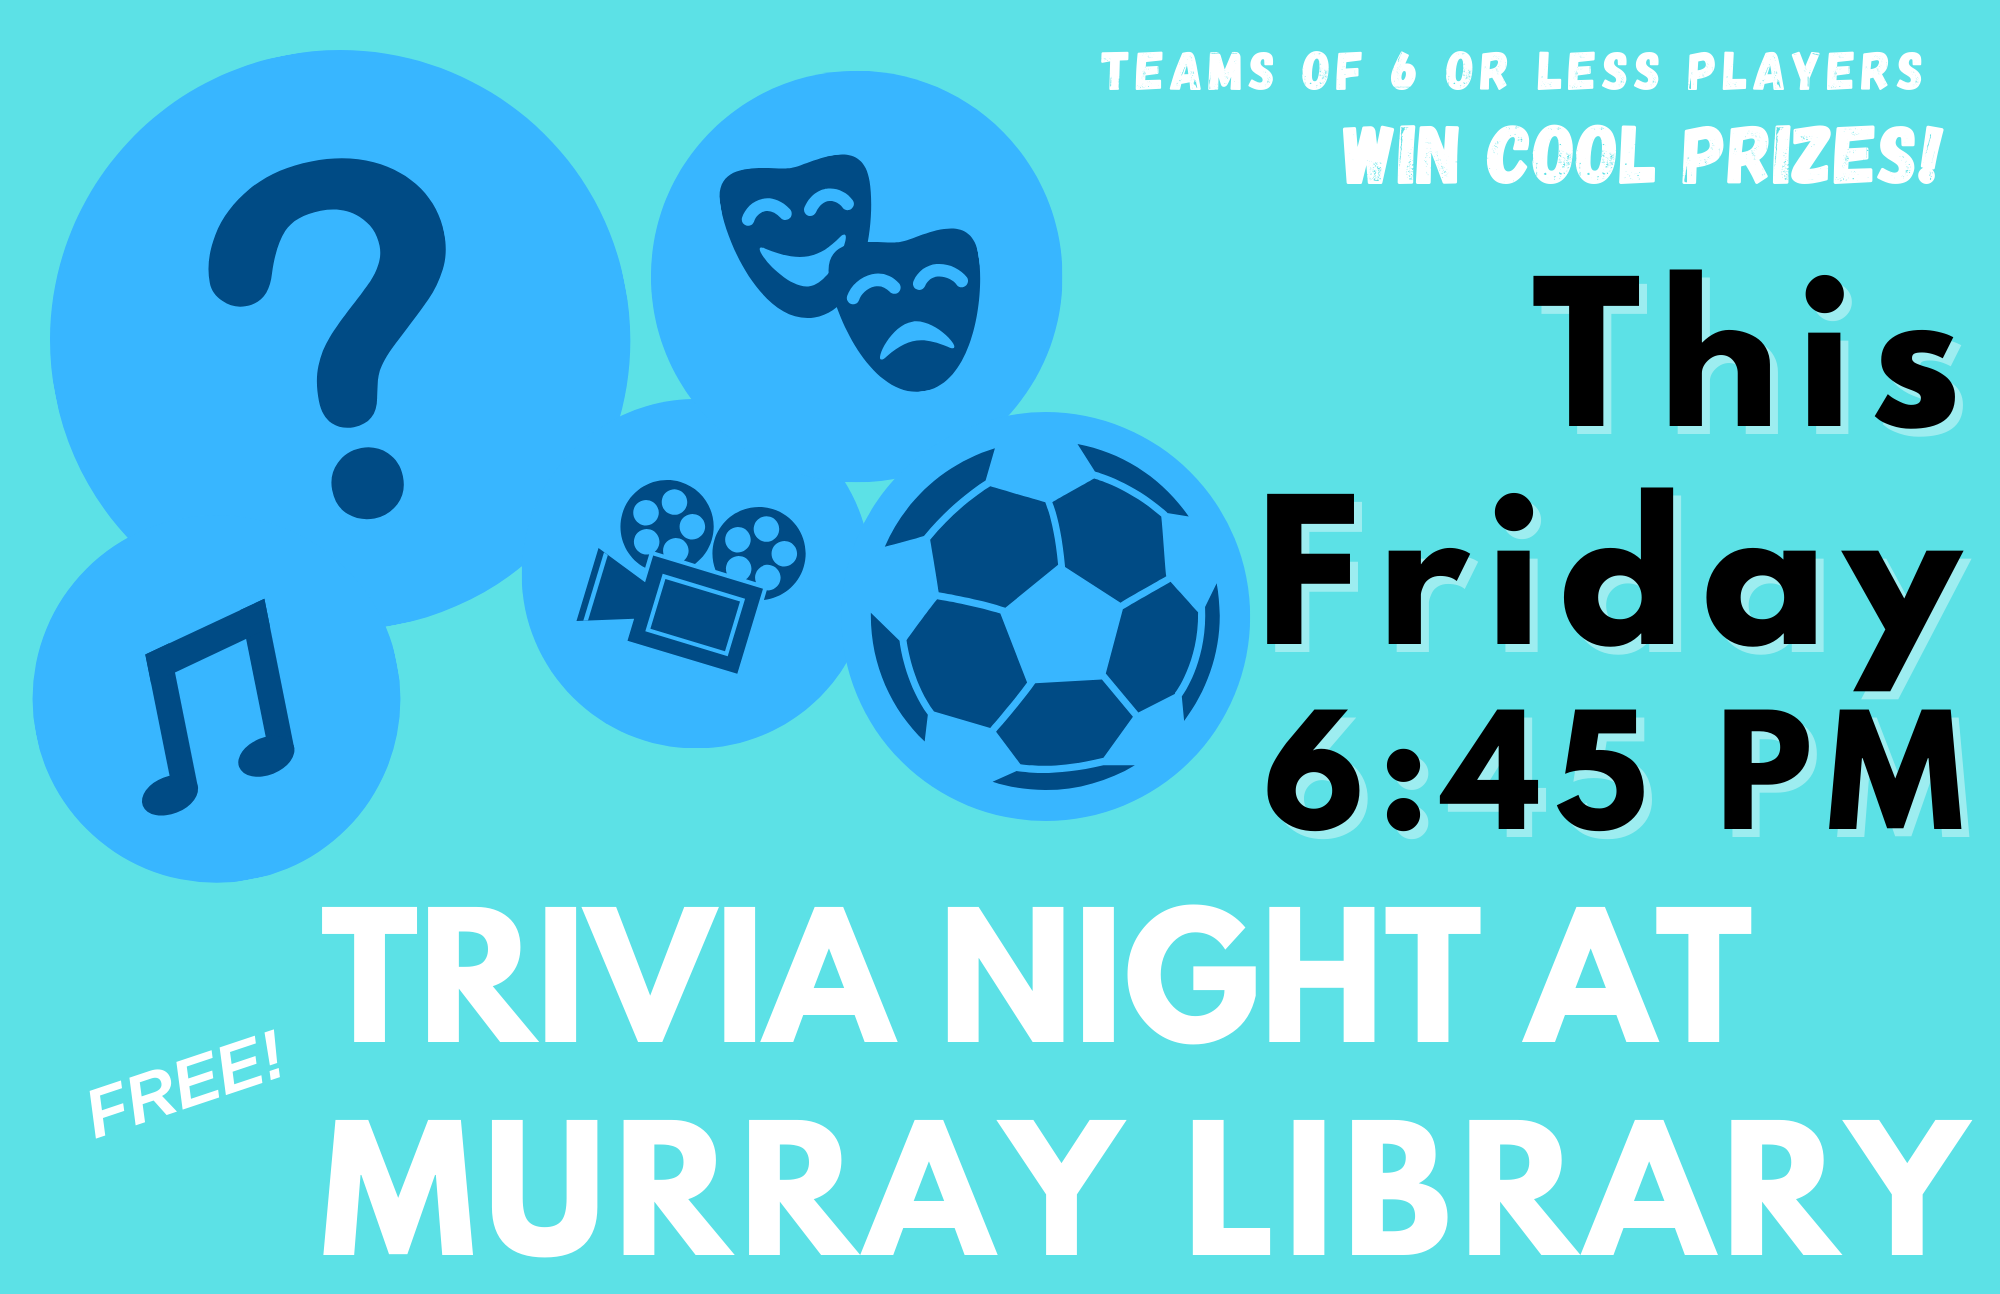 Trivia night at murray library